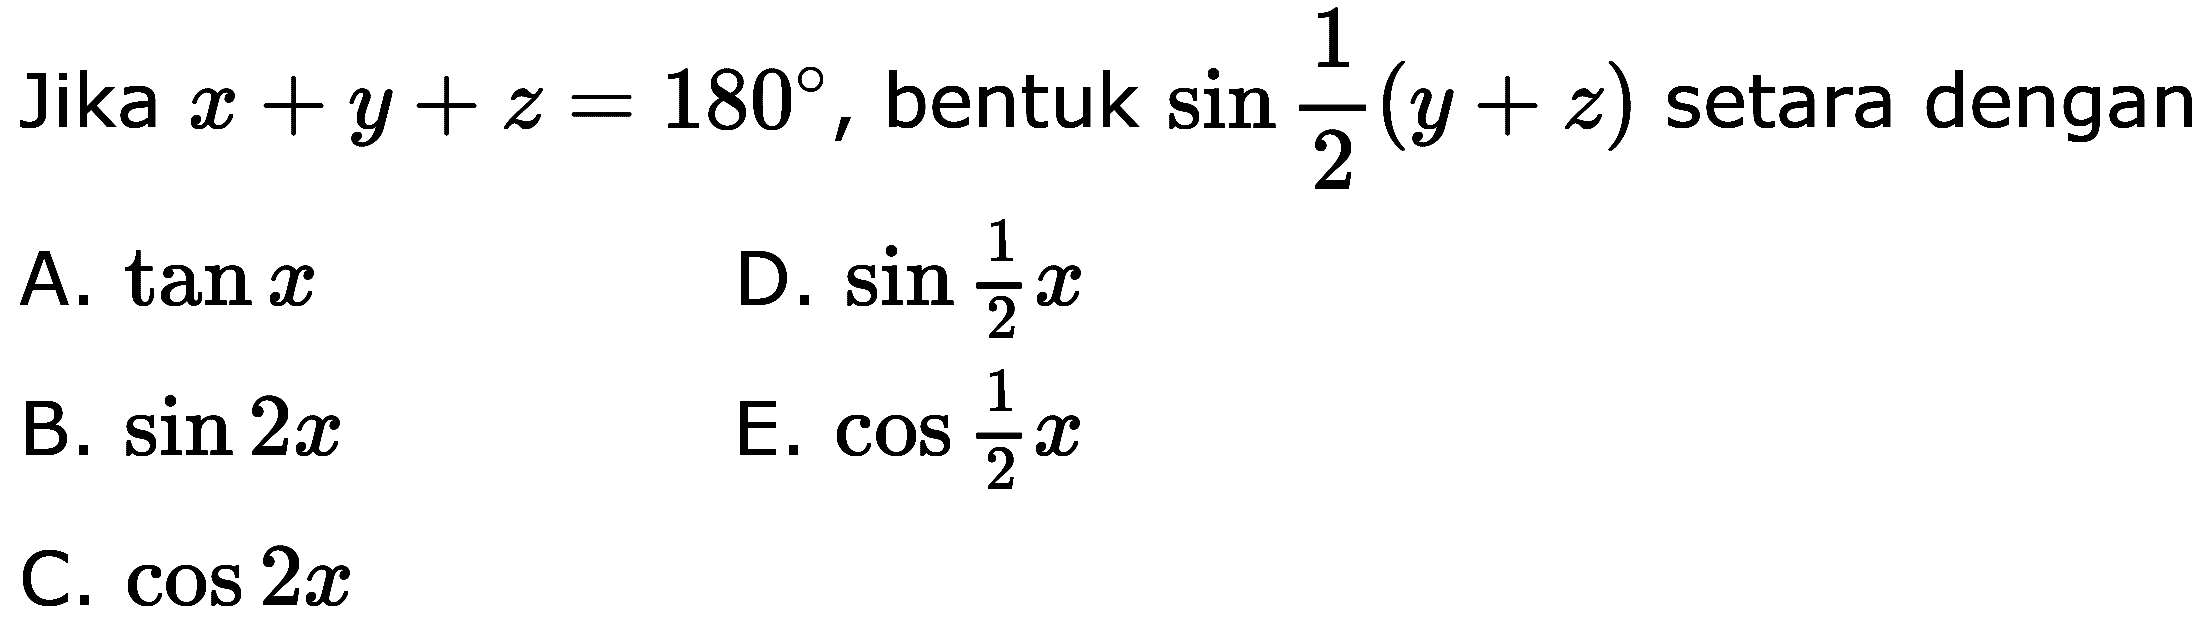 Jika x+y+z=180, bentuk sin 1/2(y+z) setara dengan